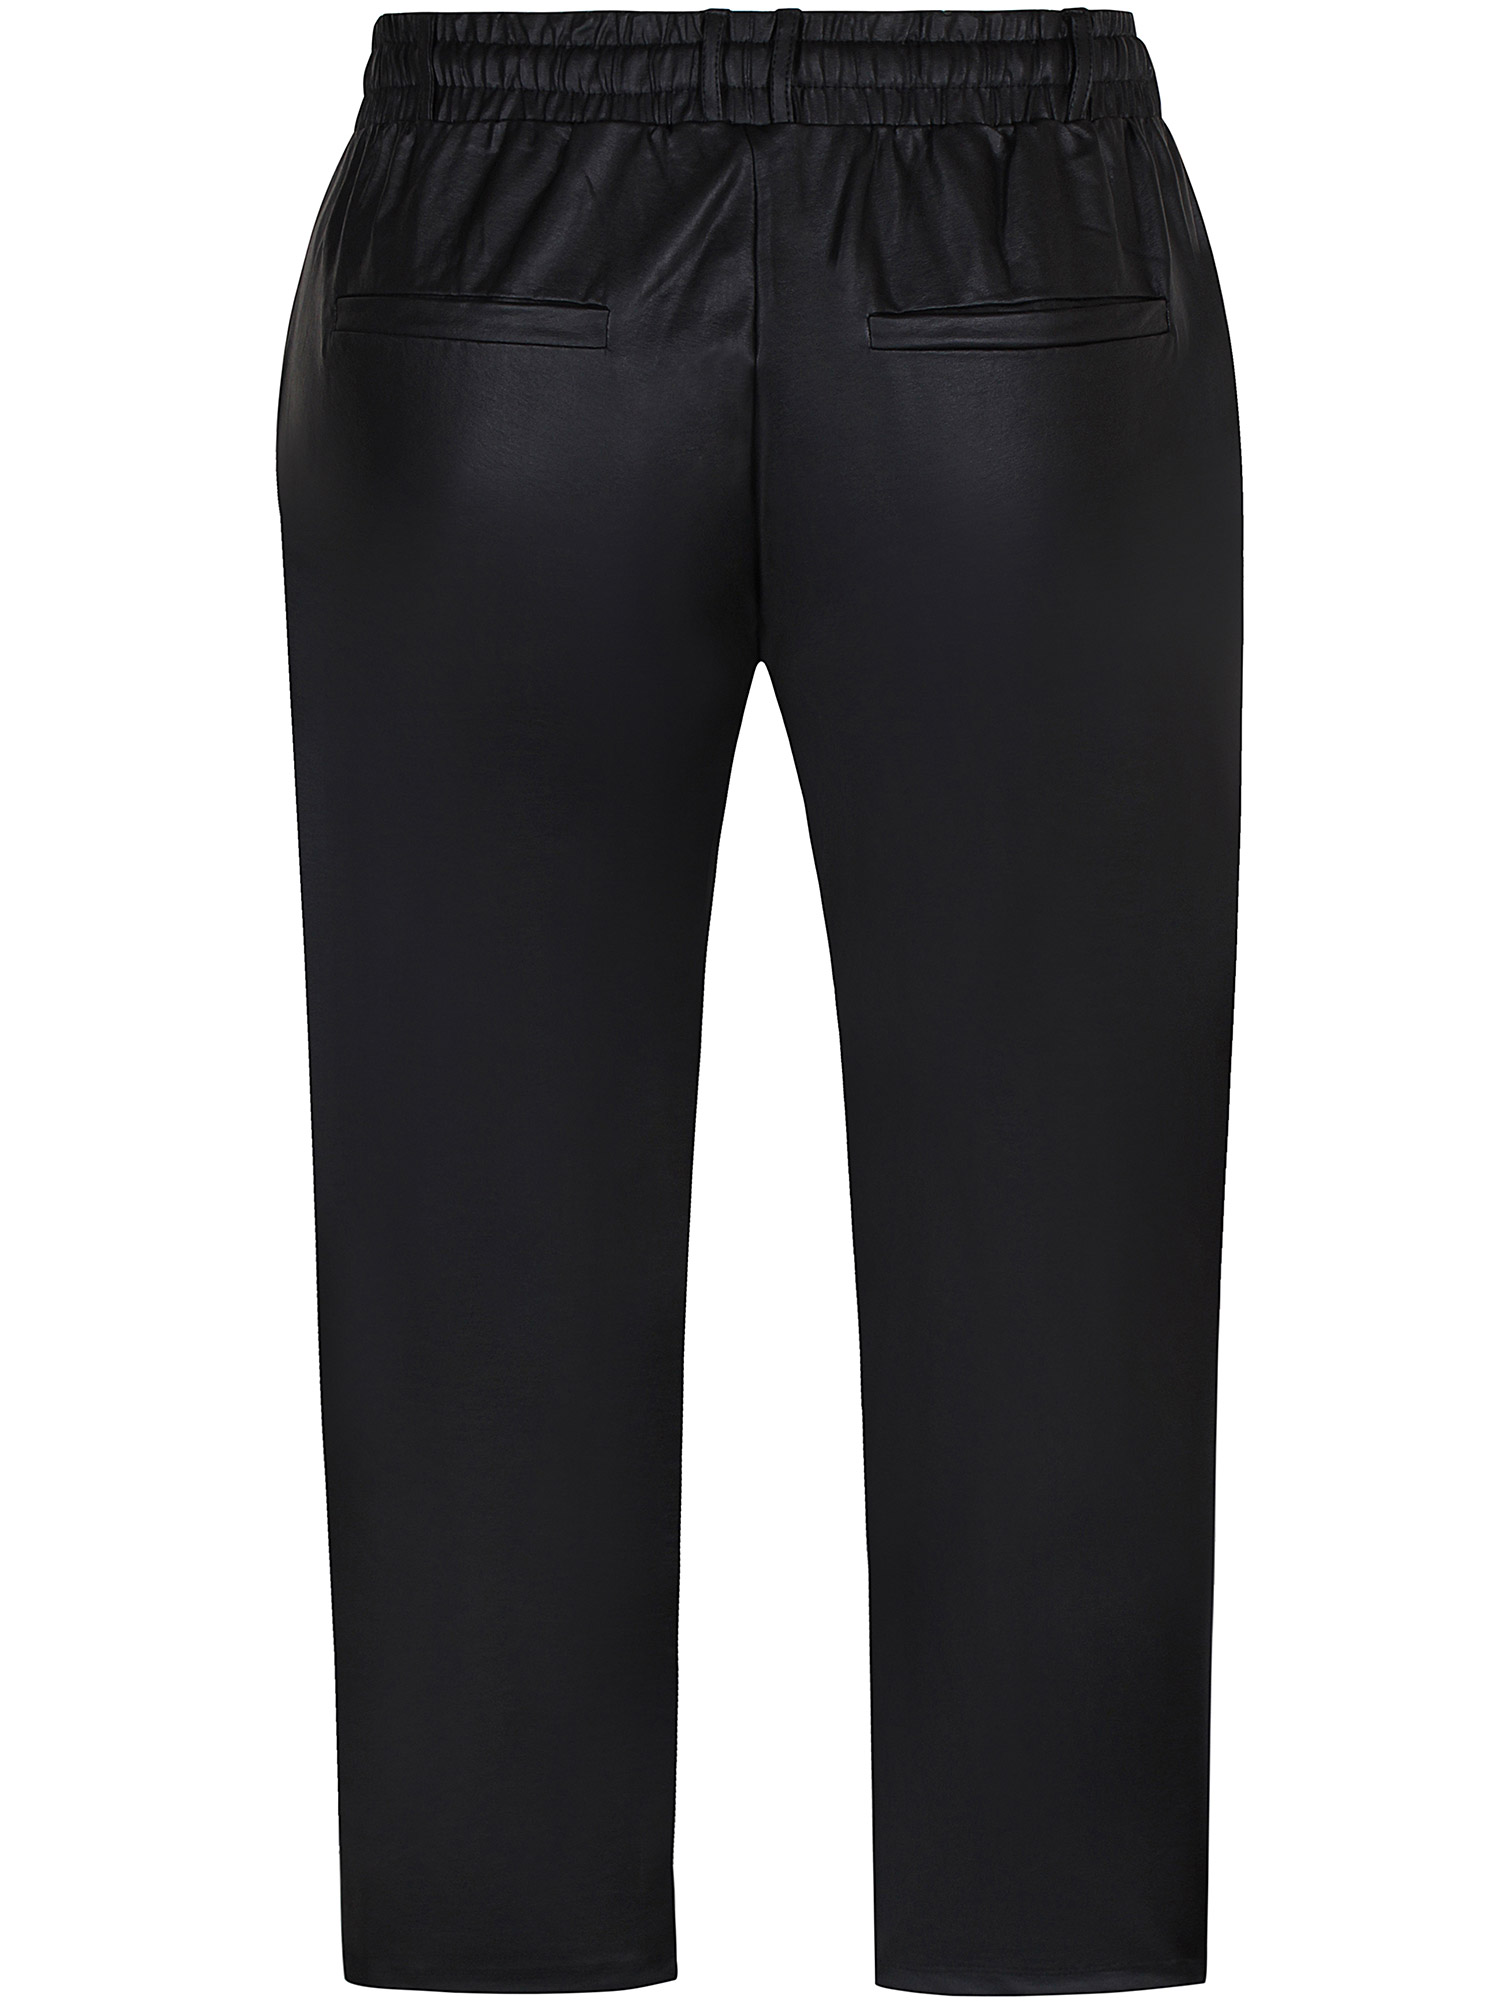 Callie - Svarte bukser i skinn look med lommer fra Zhenzi